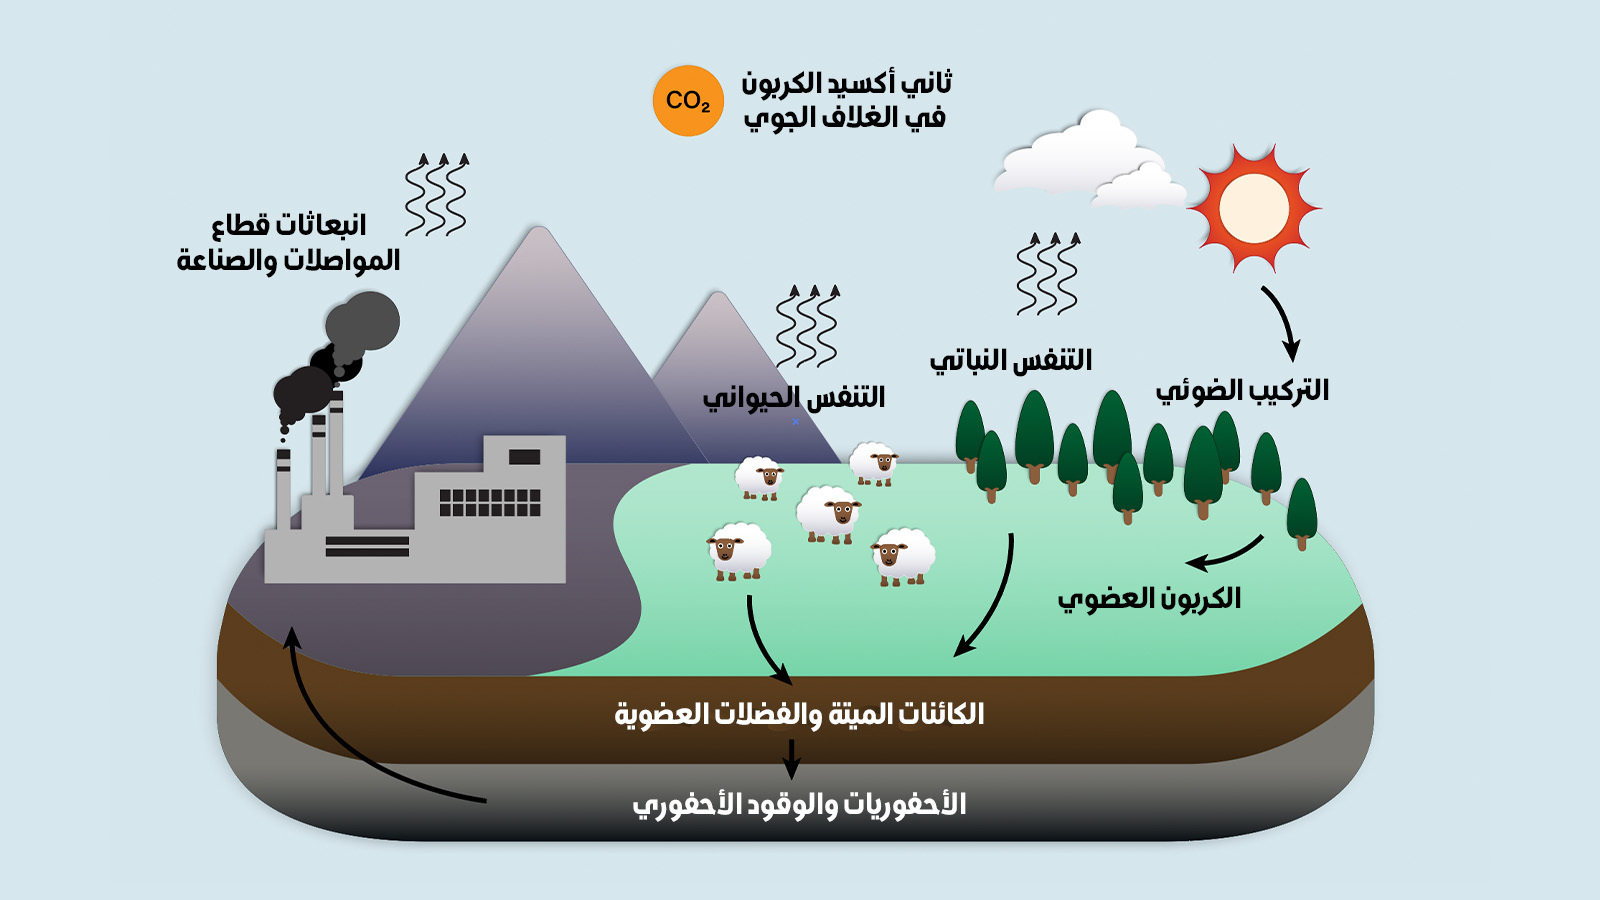 الكربون والحياة على الأرض: توازن هش - Greenpeace MENA